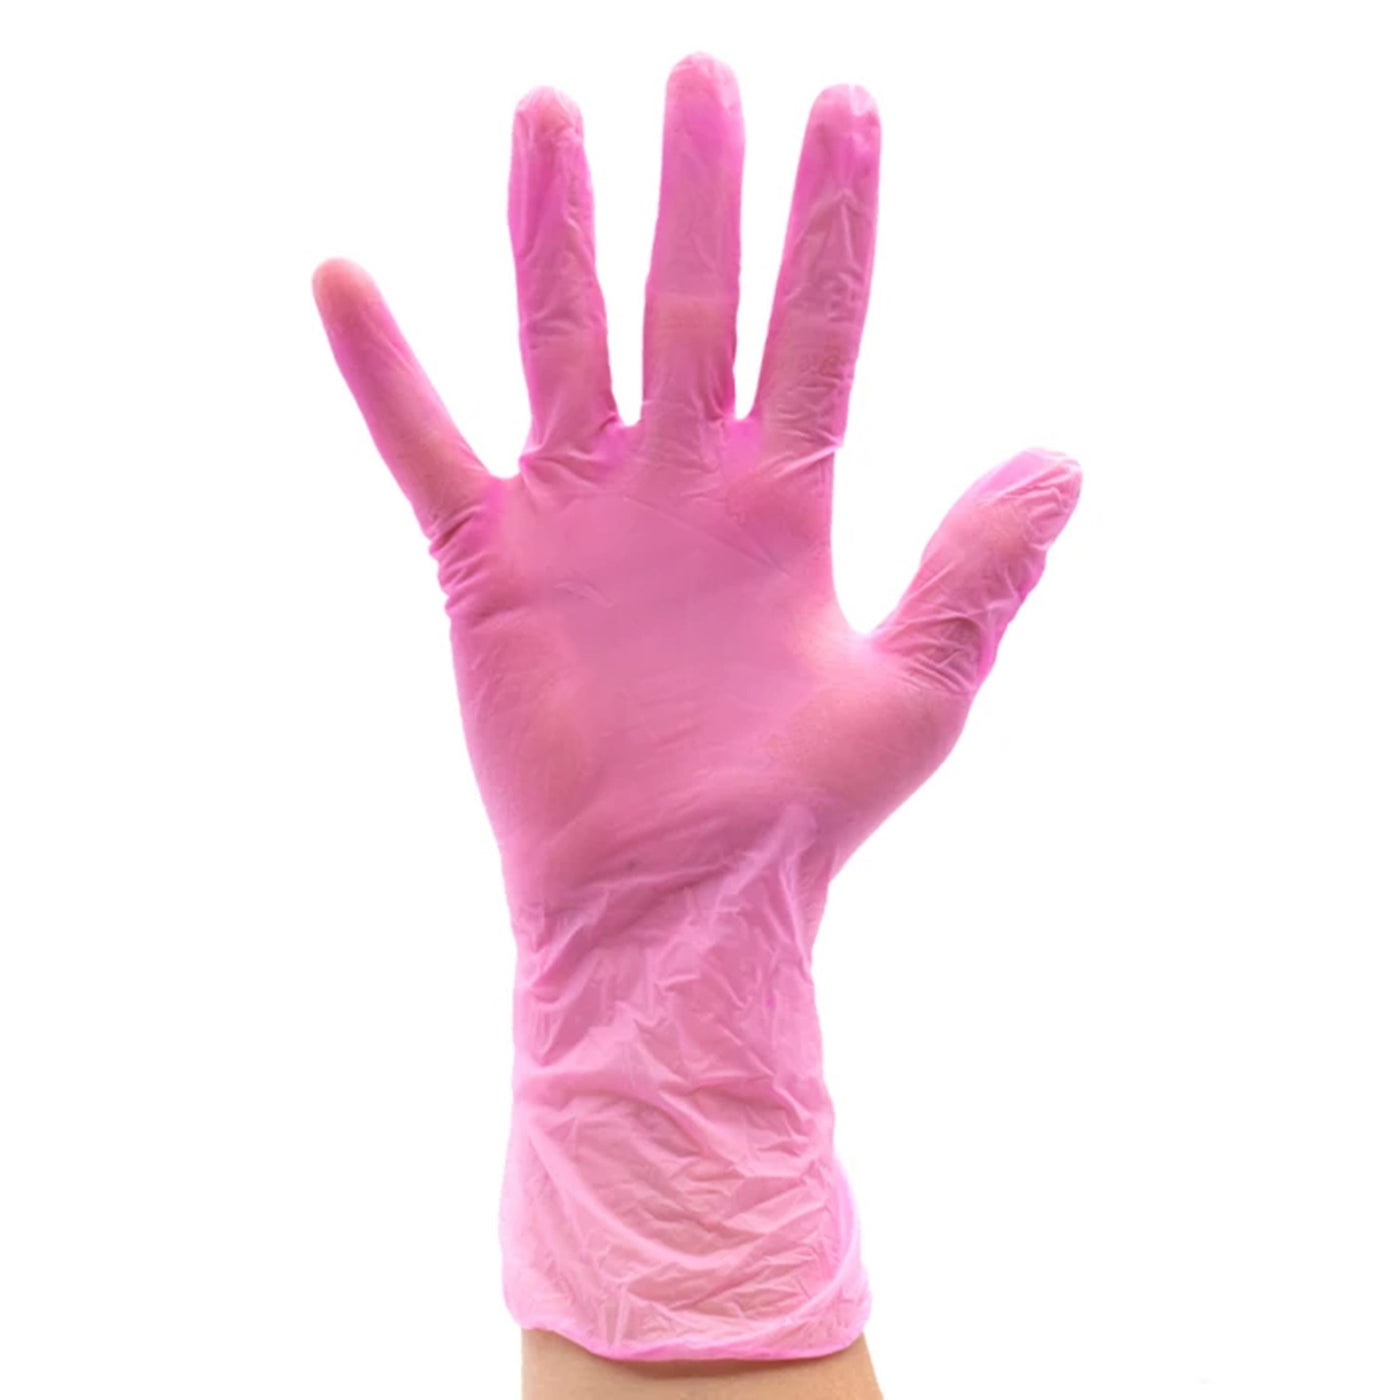 Pink Vinyl Disposable Gloves 100pk - XL